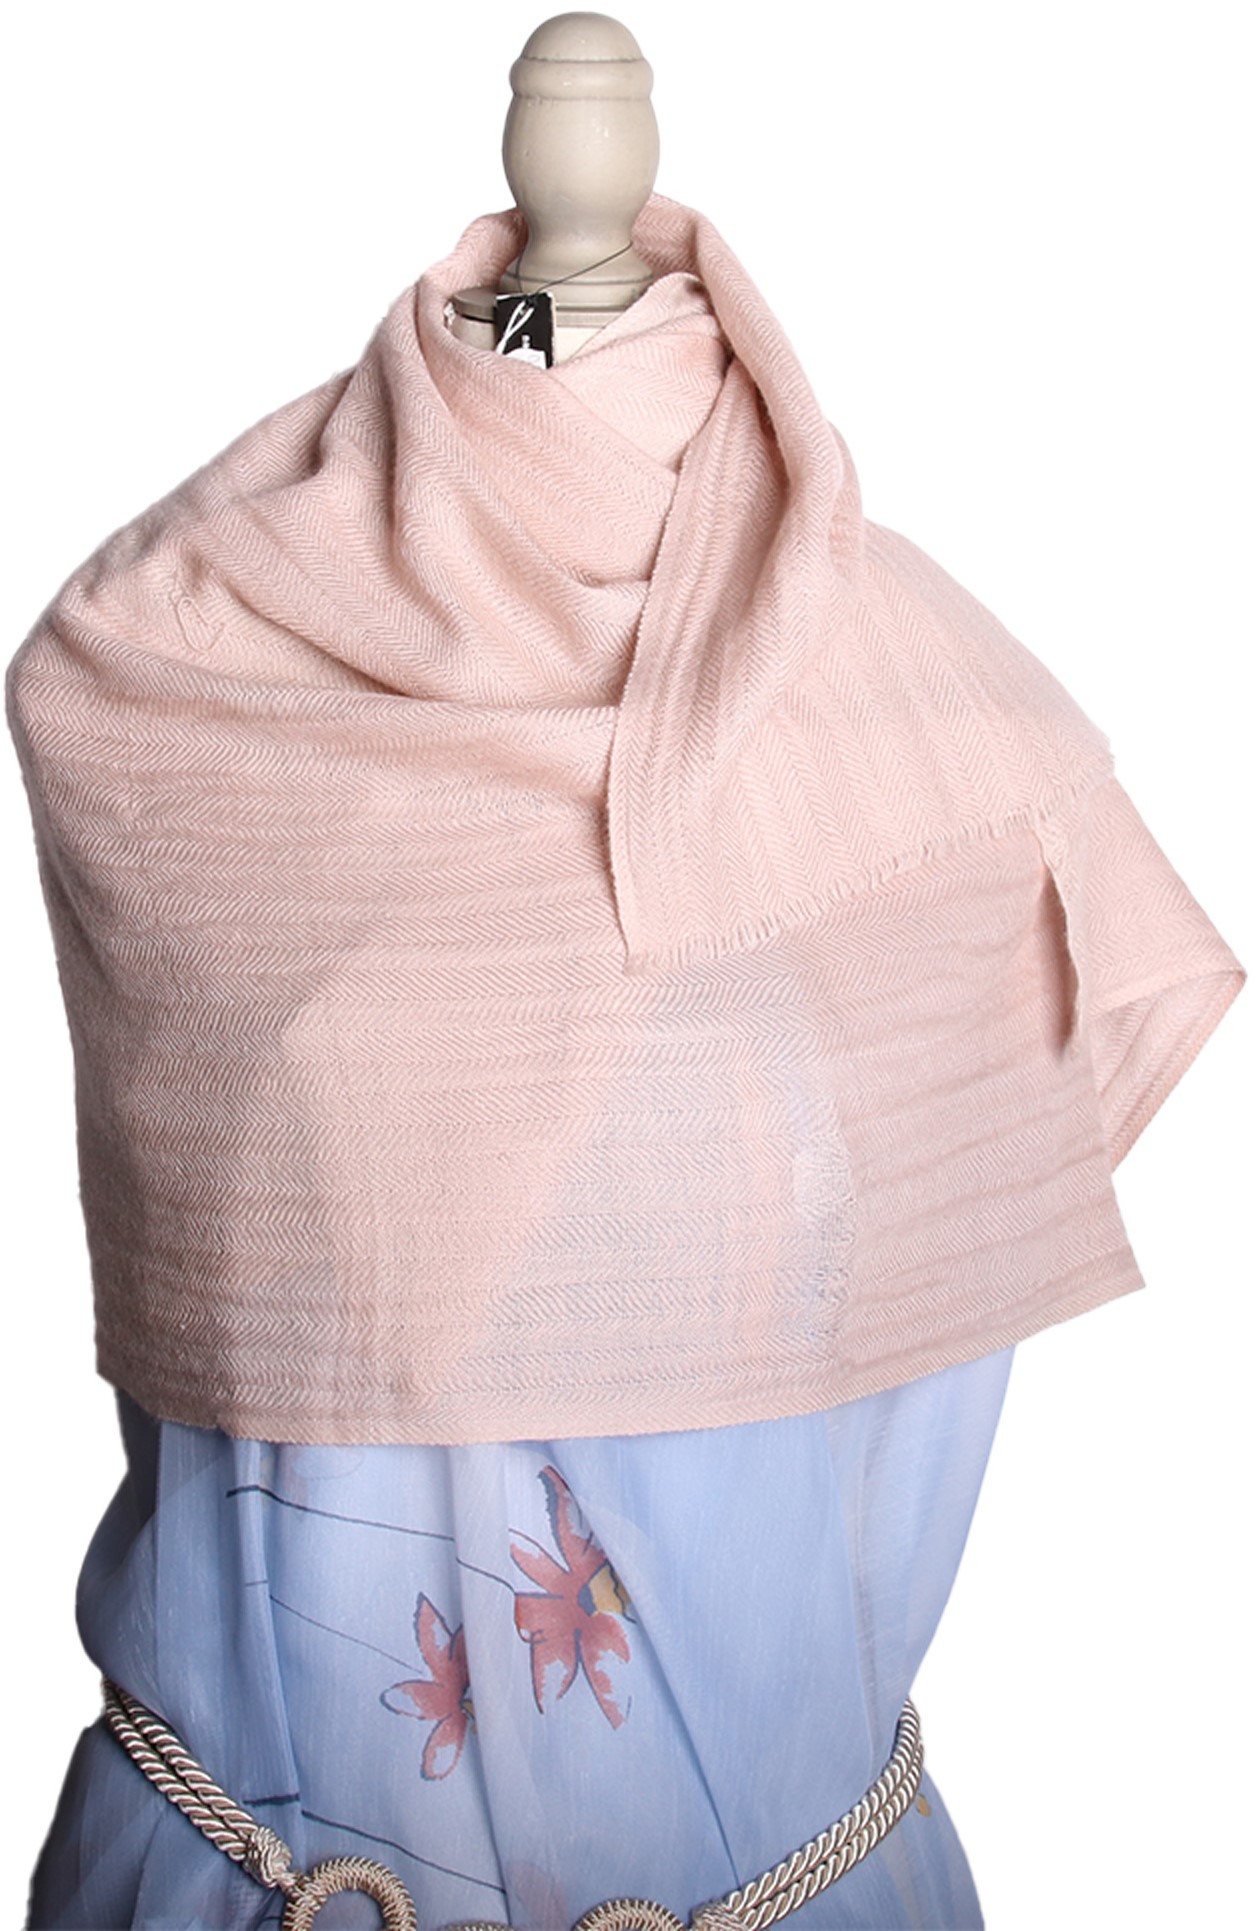 Kashmir Schal Indien aus Kaschmir Wolle rosa